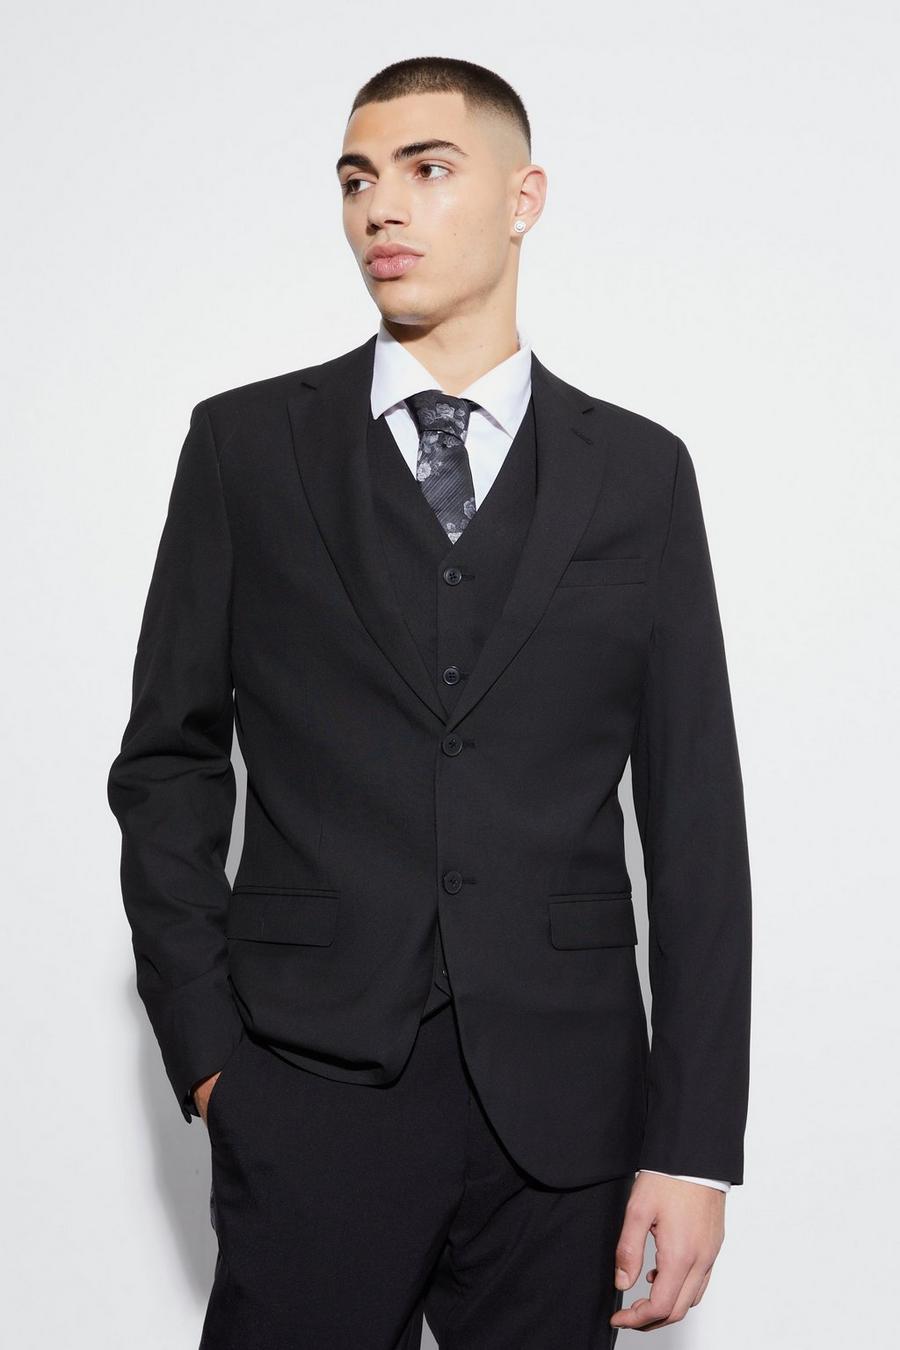 שחור nero ז'קט חליפה סקיני עם רכיסה אחת